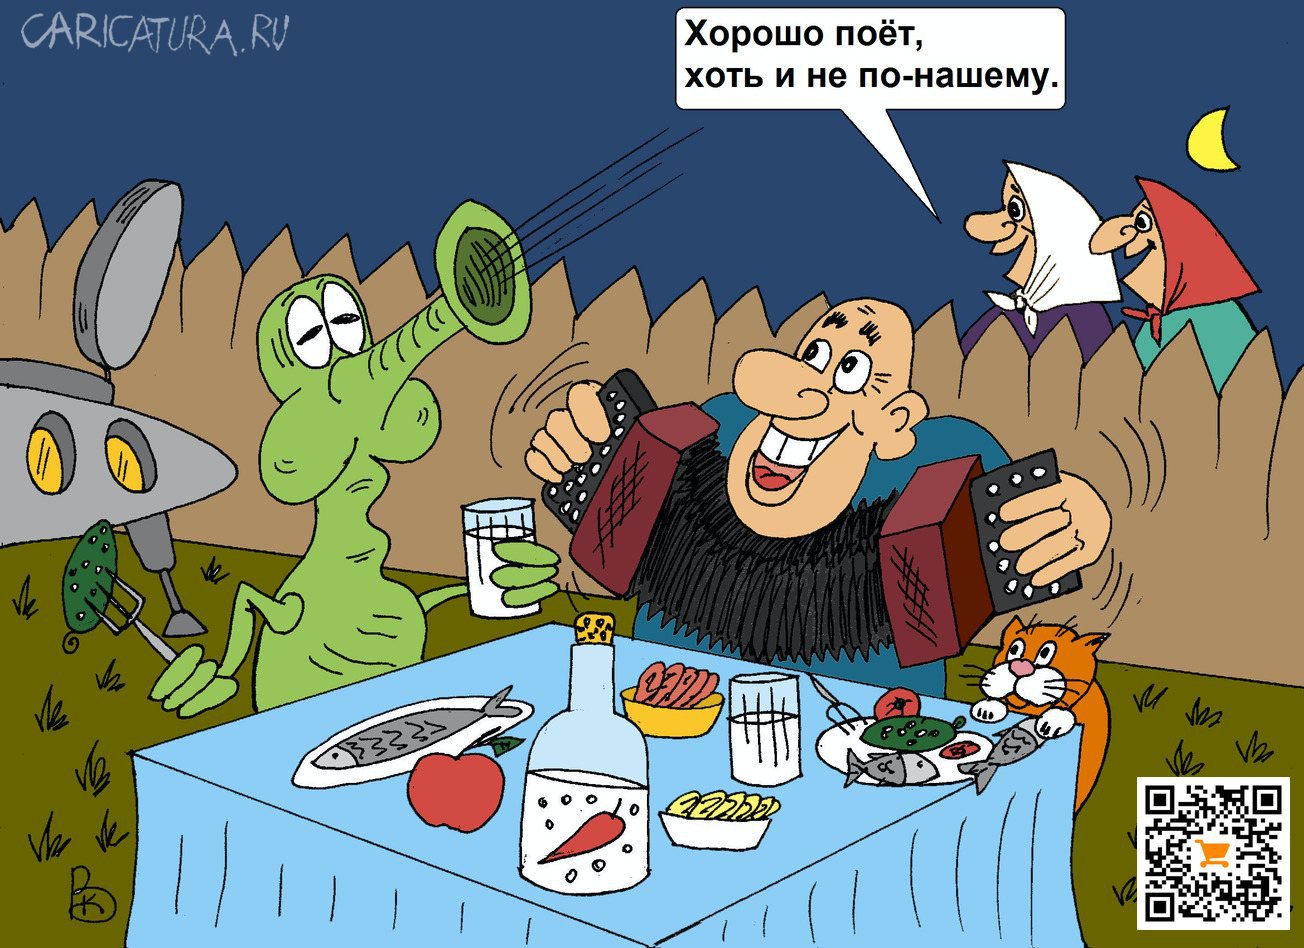 Карикатура "Хорошо поет", Валерий Каненков